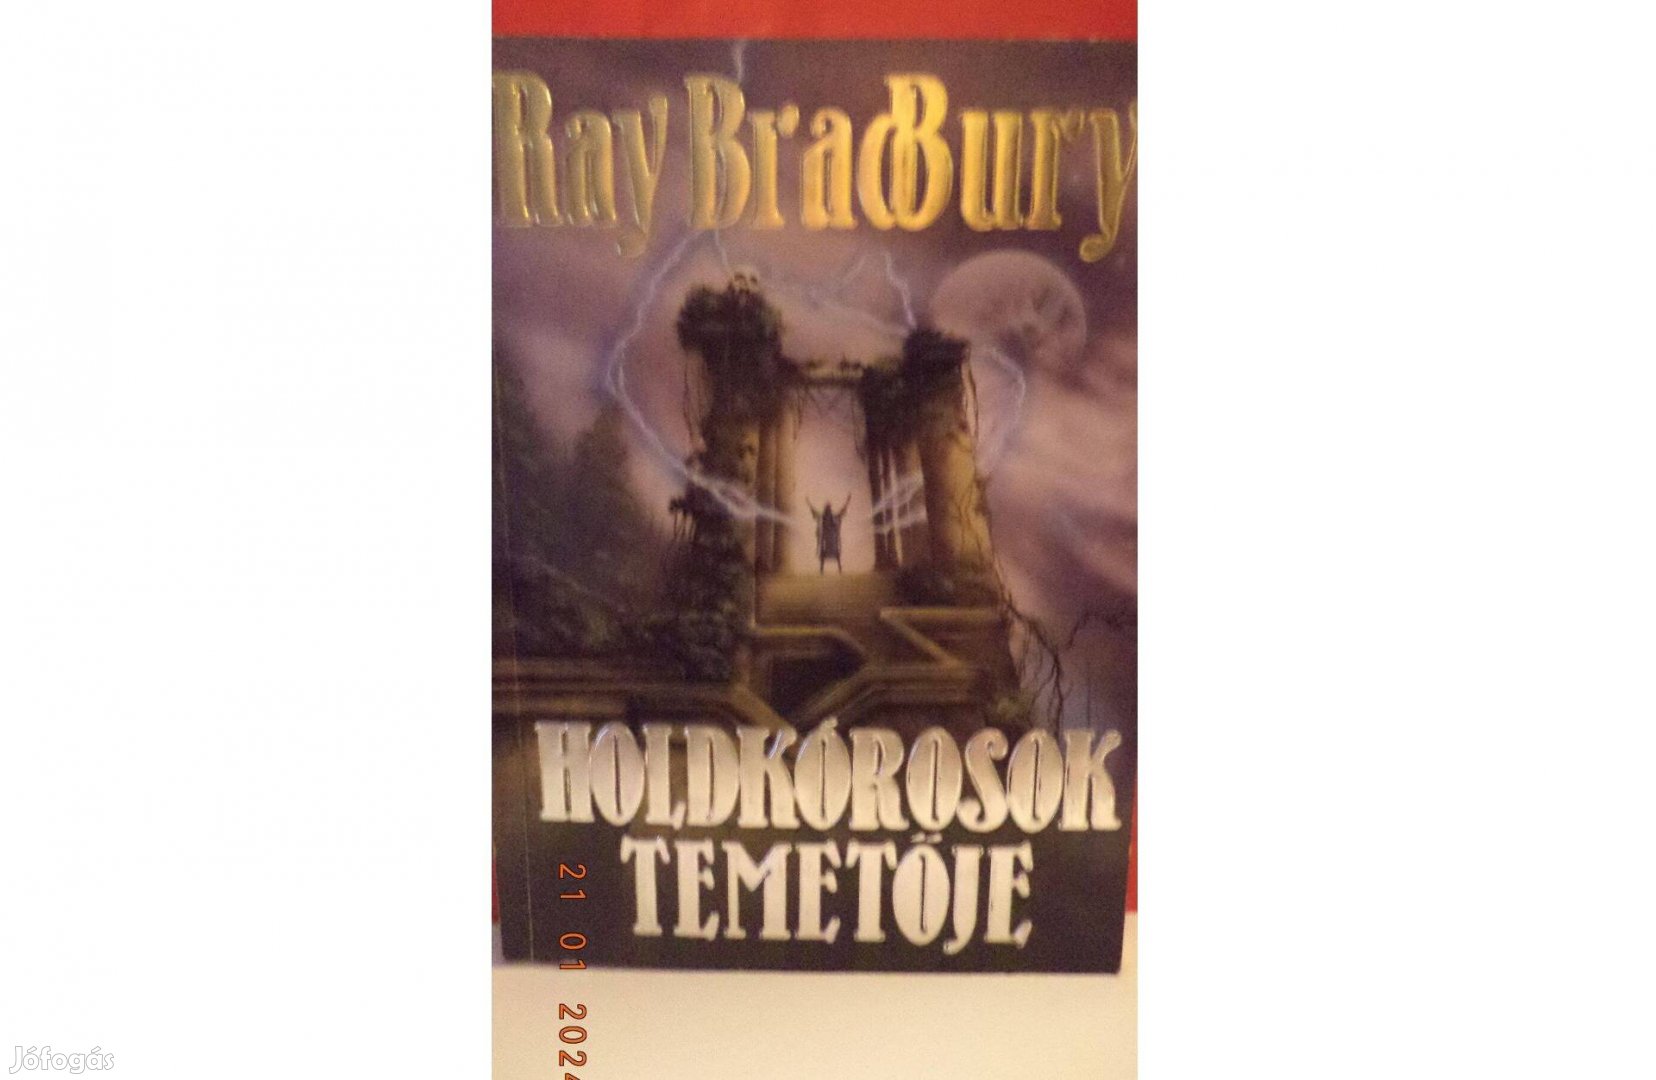 Ray Bradbury: Holdkórosok temetője